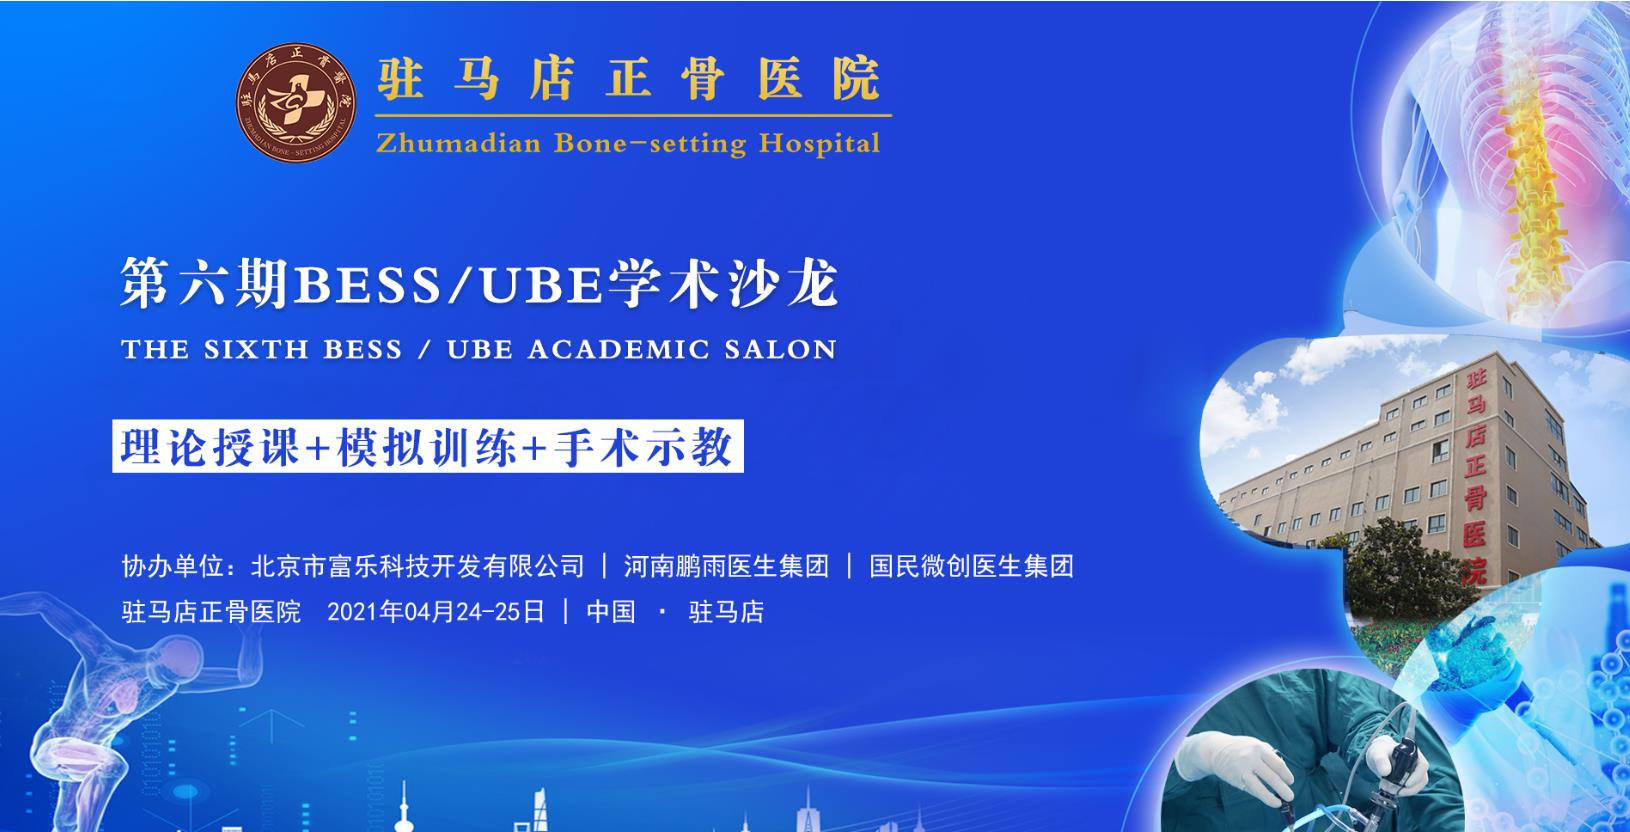 驻马店正骨医院第六期BESS/UBE培训会议圆满成功